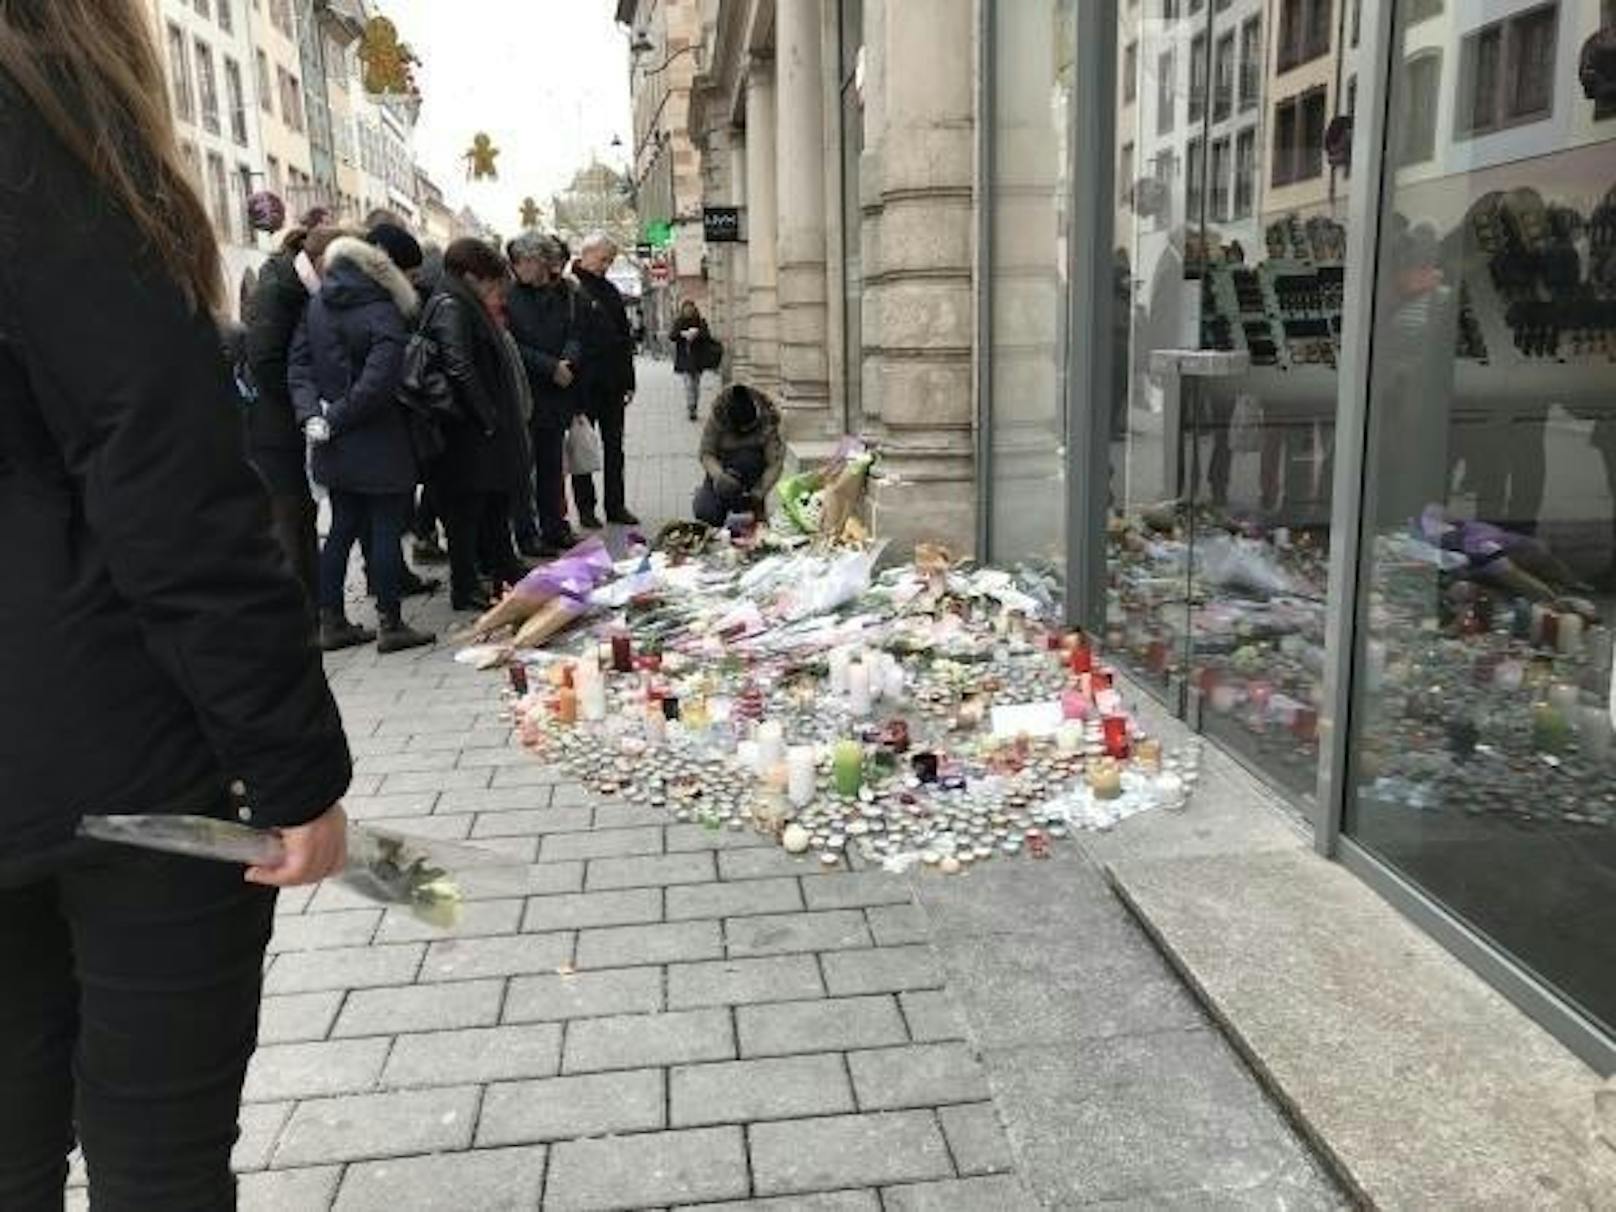 An verschiedenen Stellen in der Stadt und auf dem Markt selbst wird den Opfern des Attentats mit Blumen und Kerzen gedacht.